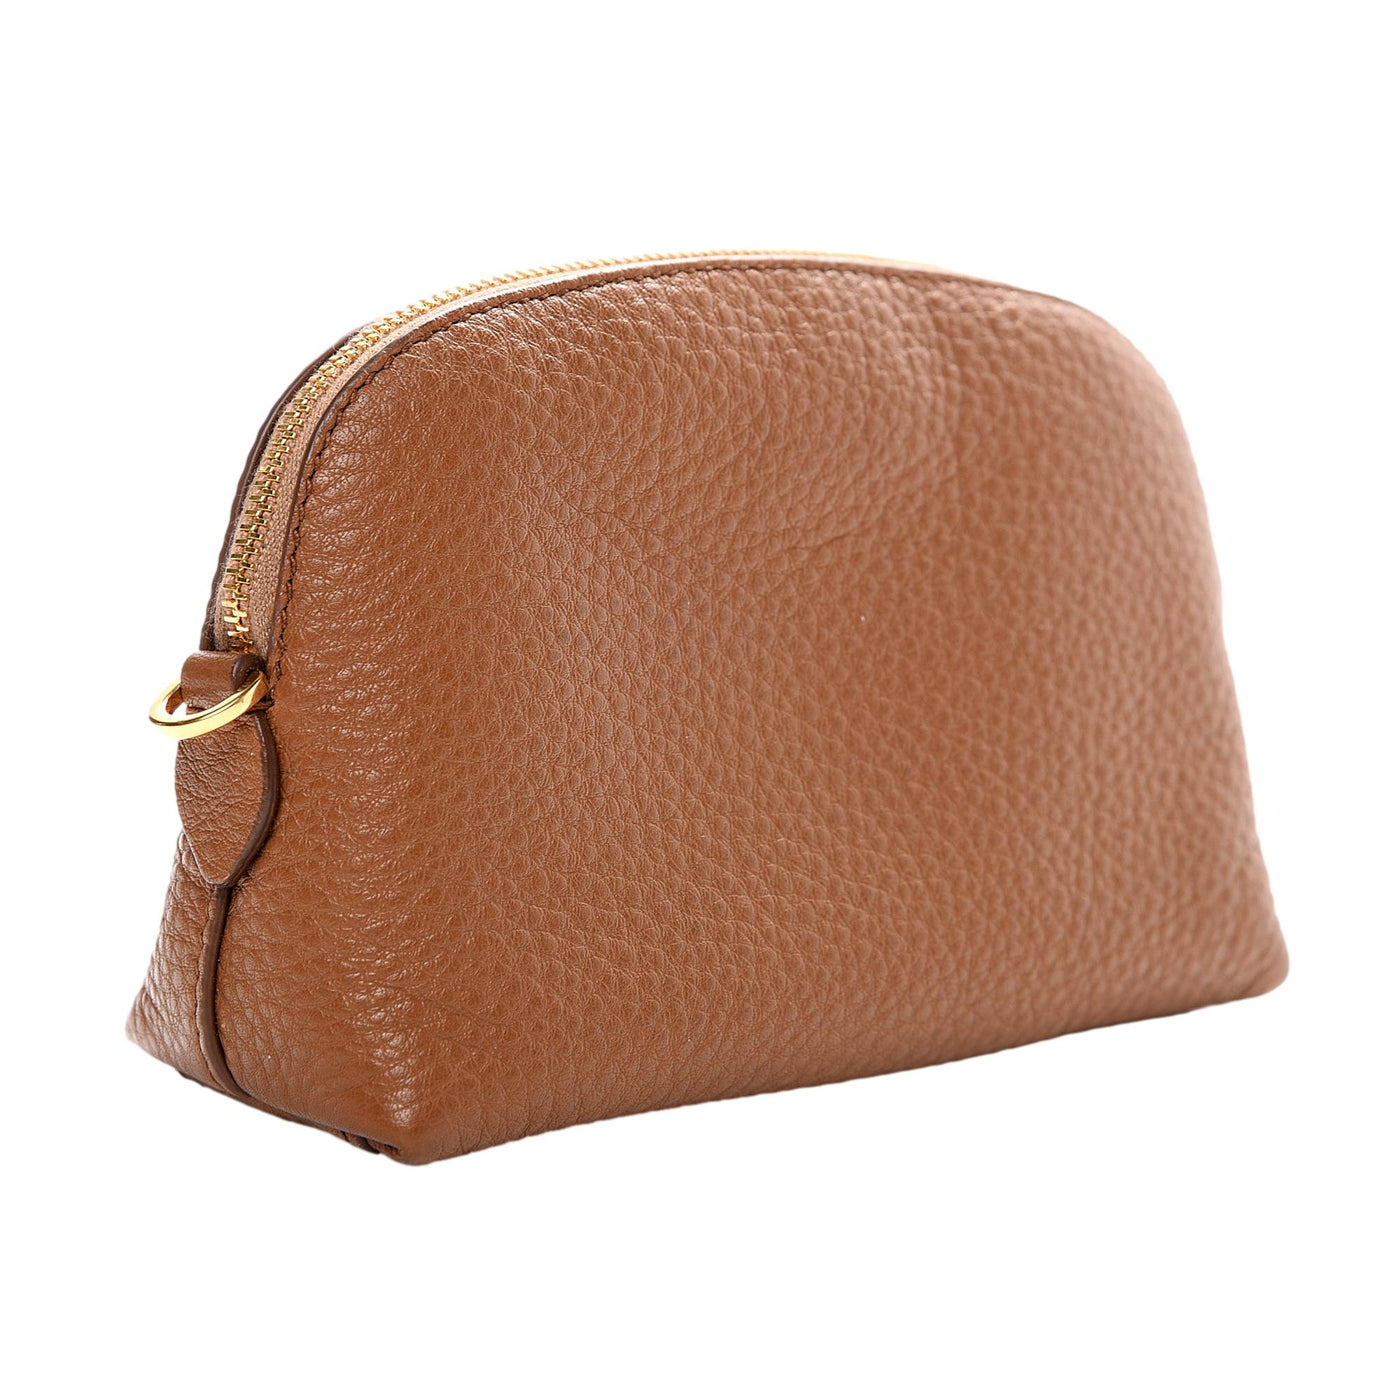 Prada Vitello Daino Cannella Brown Leather Small Cosmetic Case Bag - LUXURYMRKT